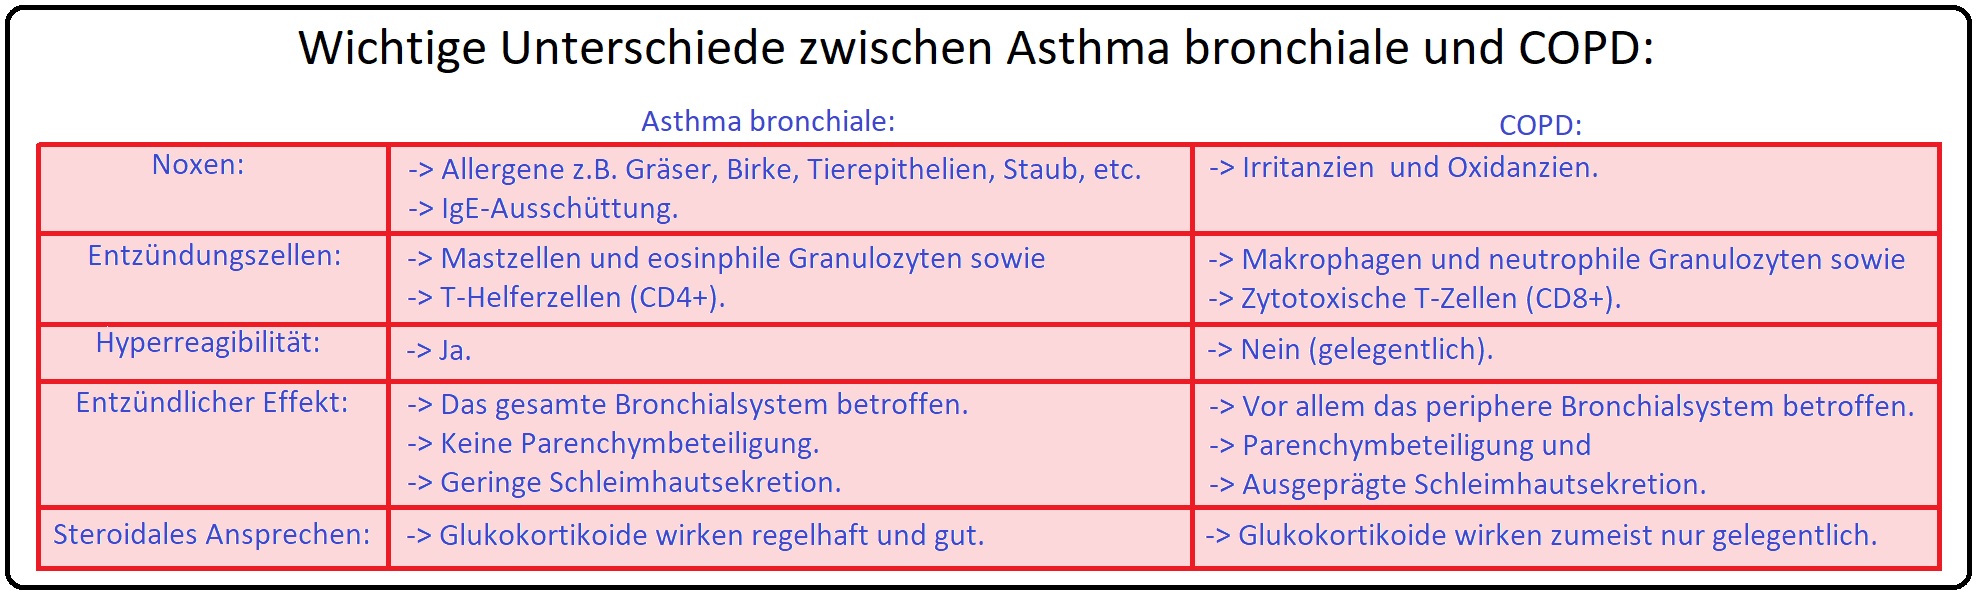 968 Wichtige Unterschiede zwischen Asthma bronchiale und COPD